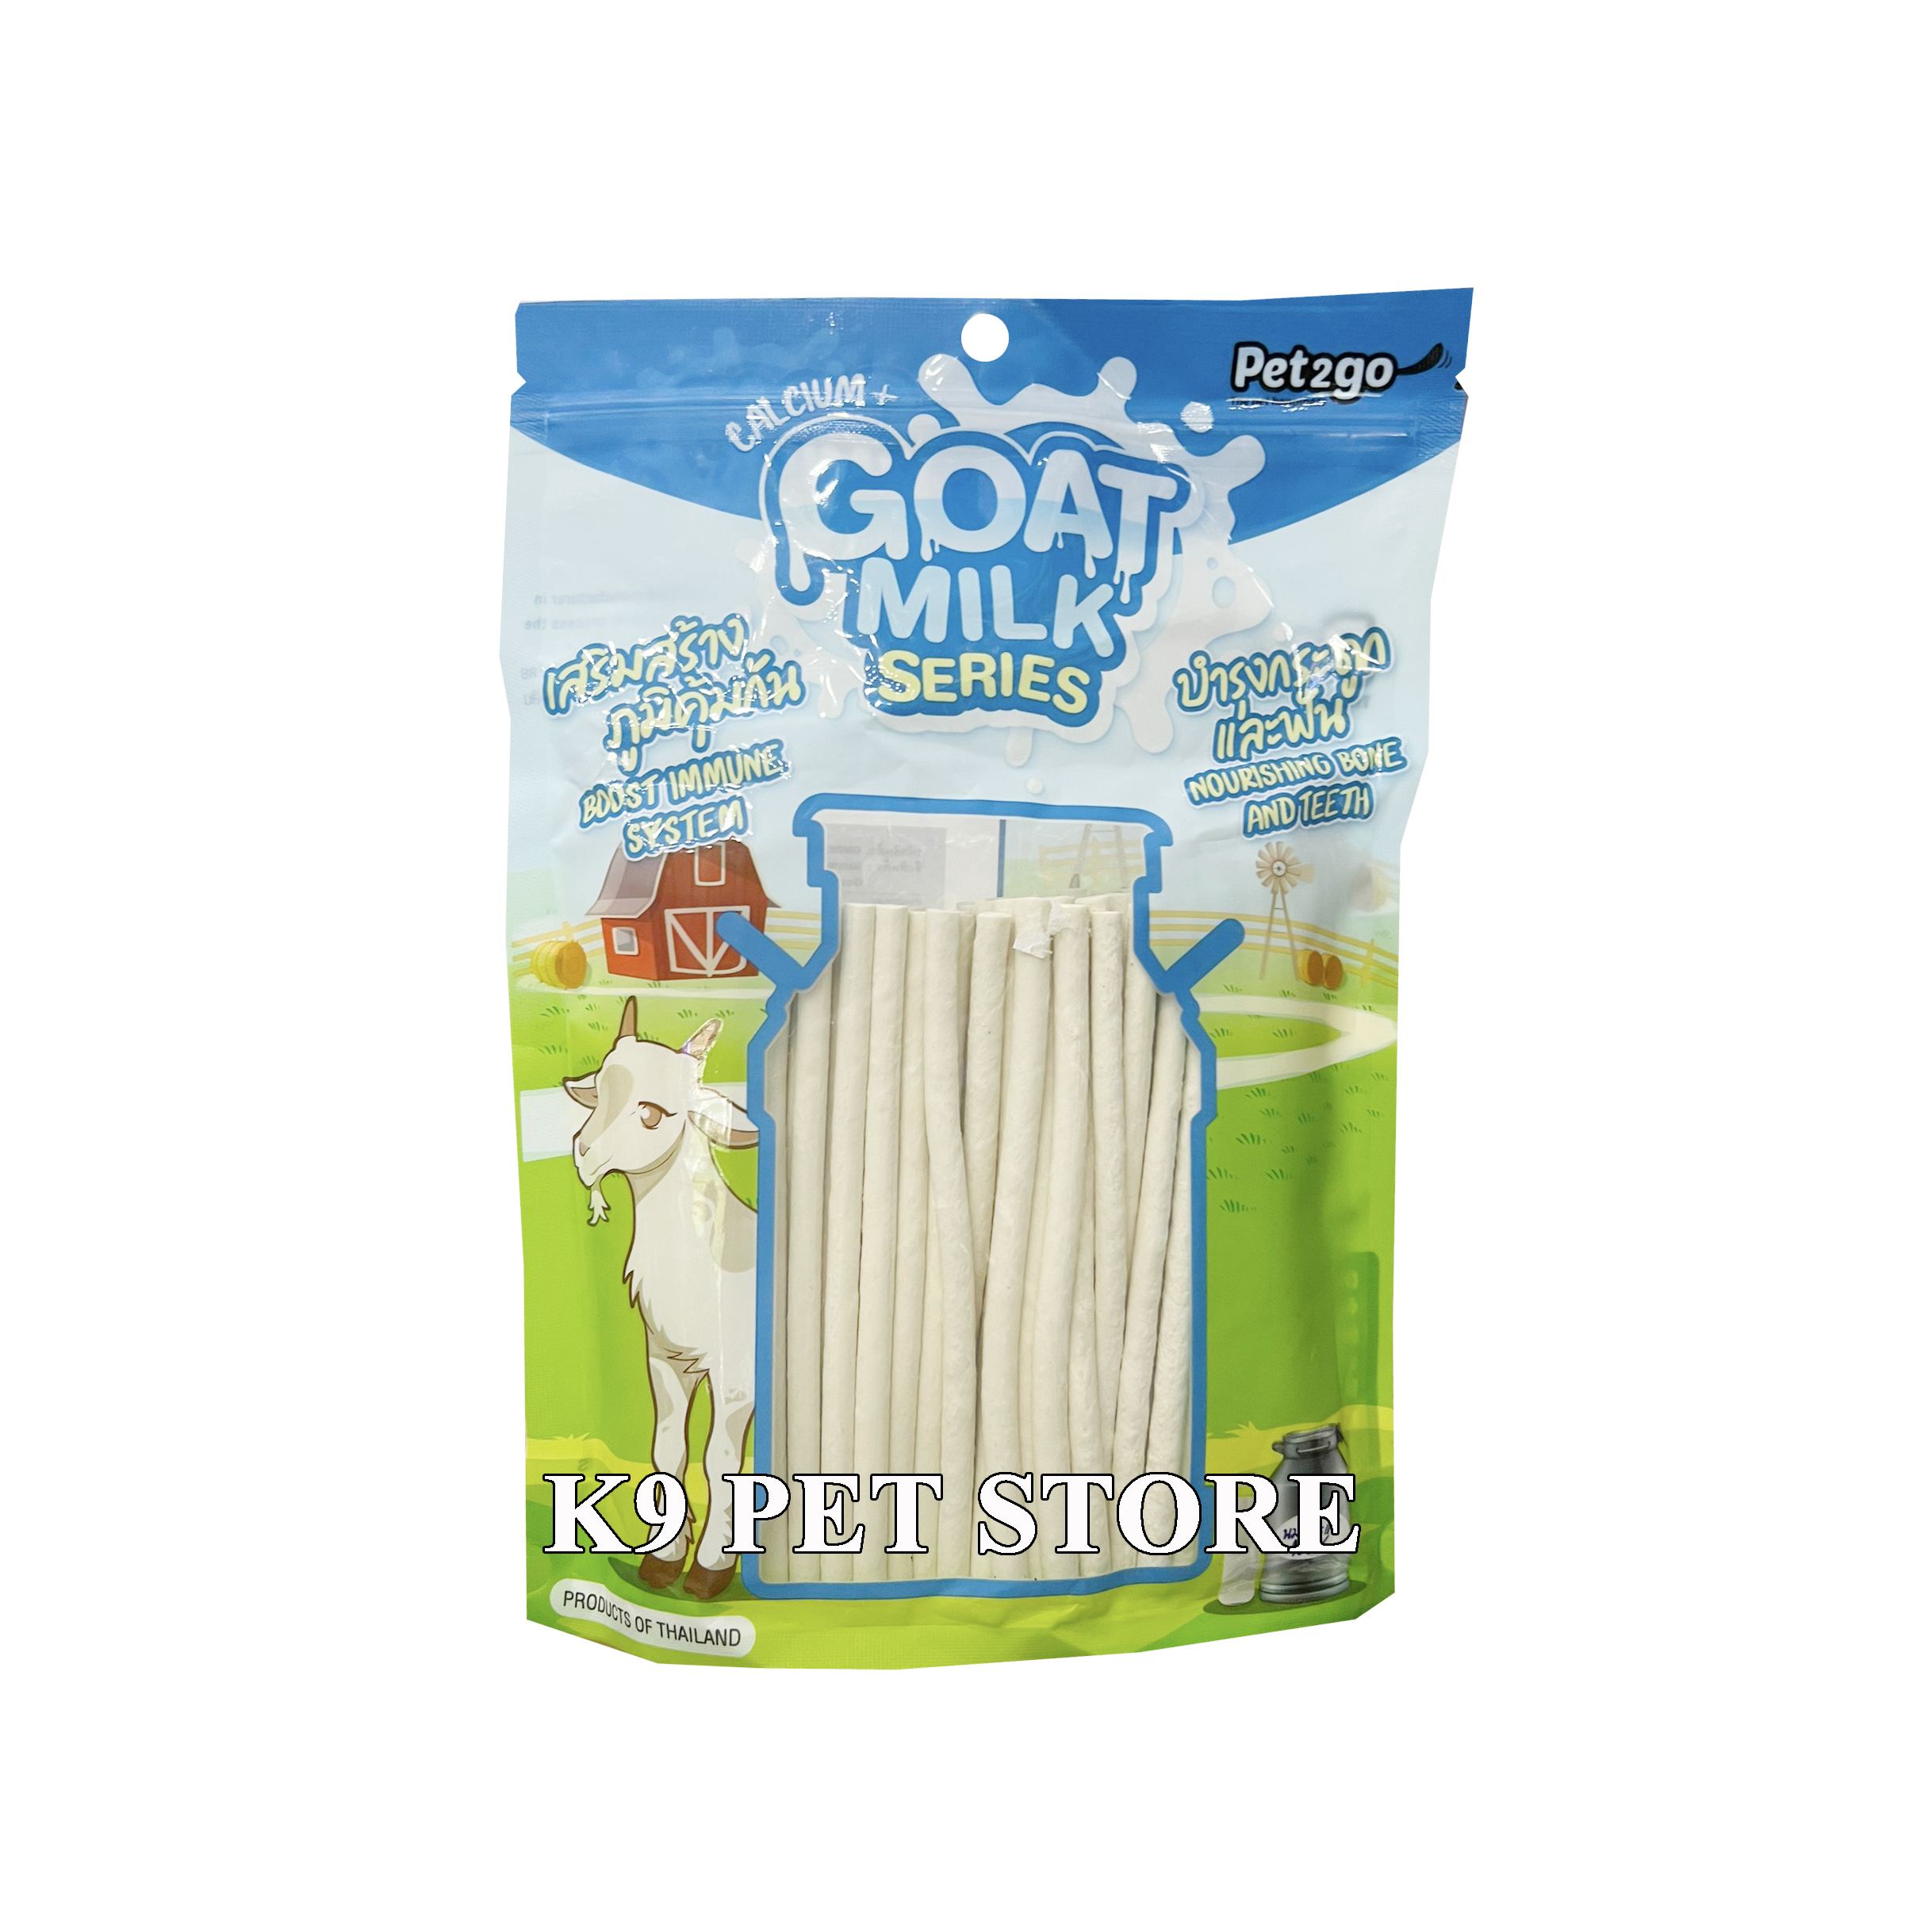 Que mềm snack cho chó làm từ sữa dê Goat Milk Pet2go 500g